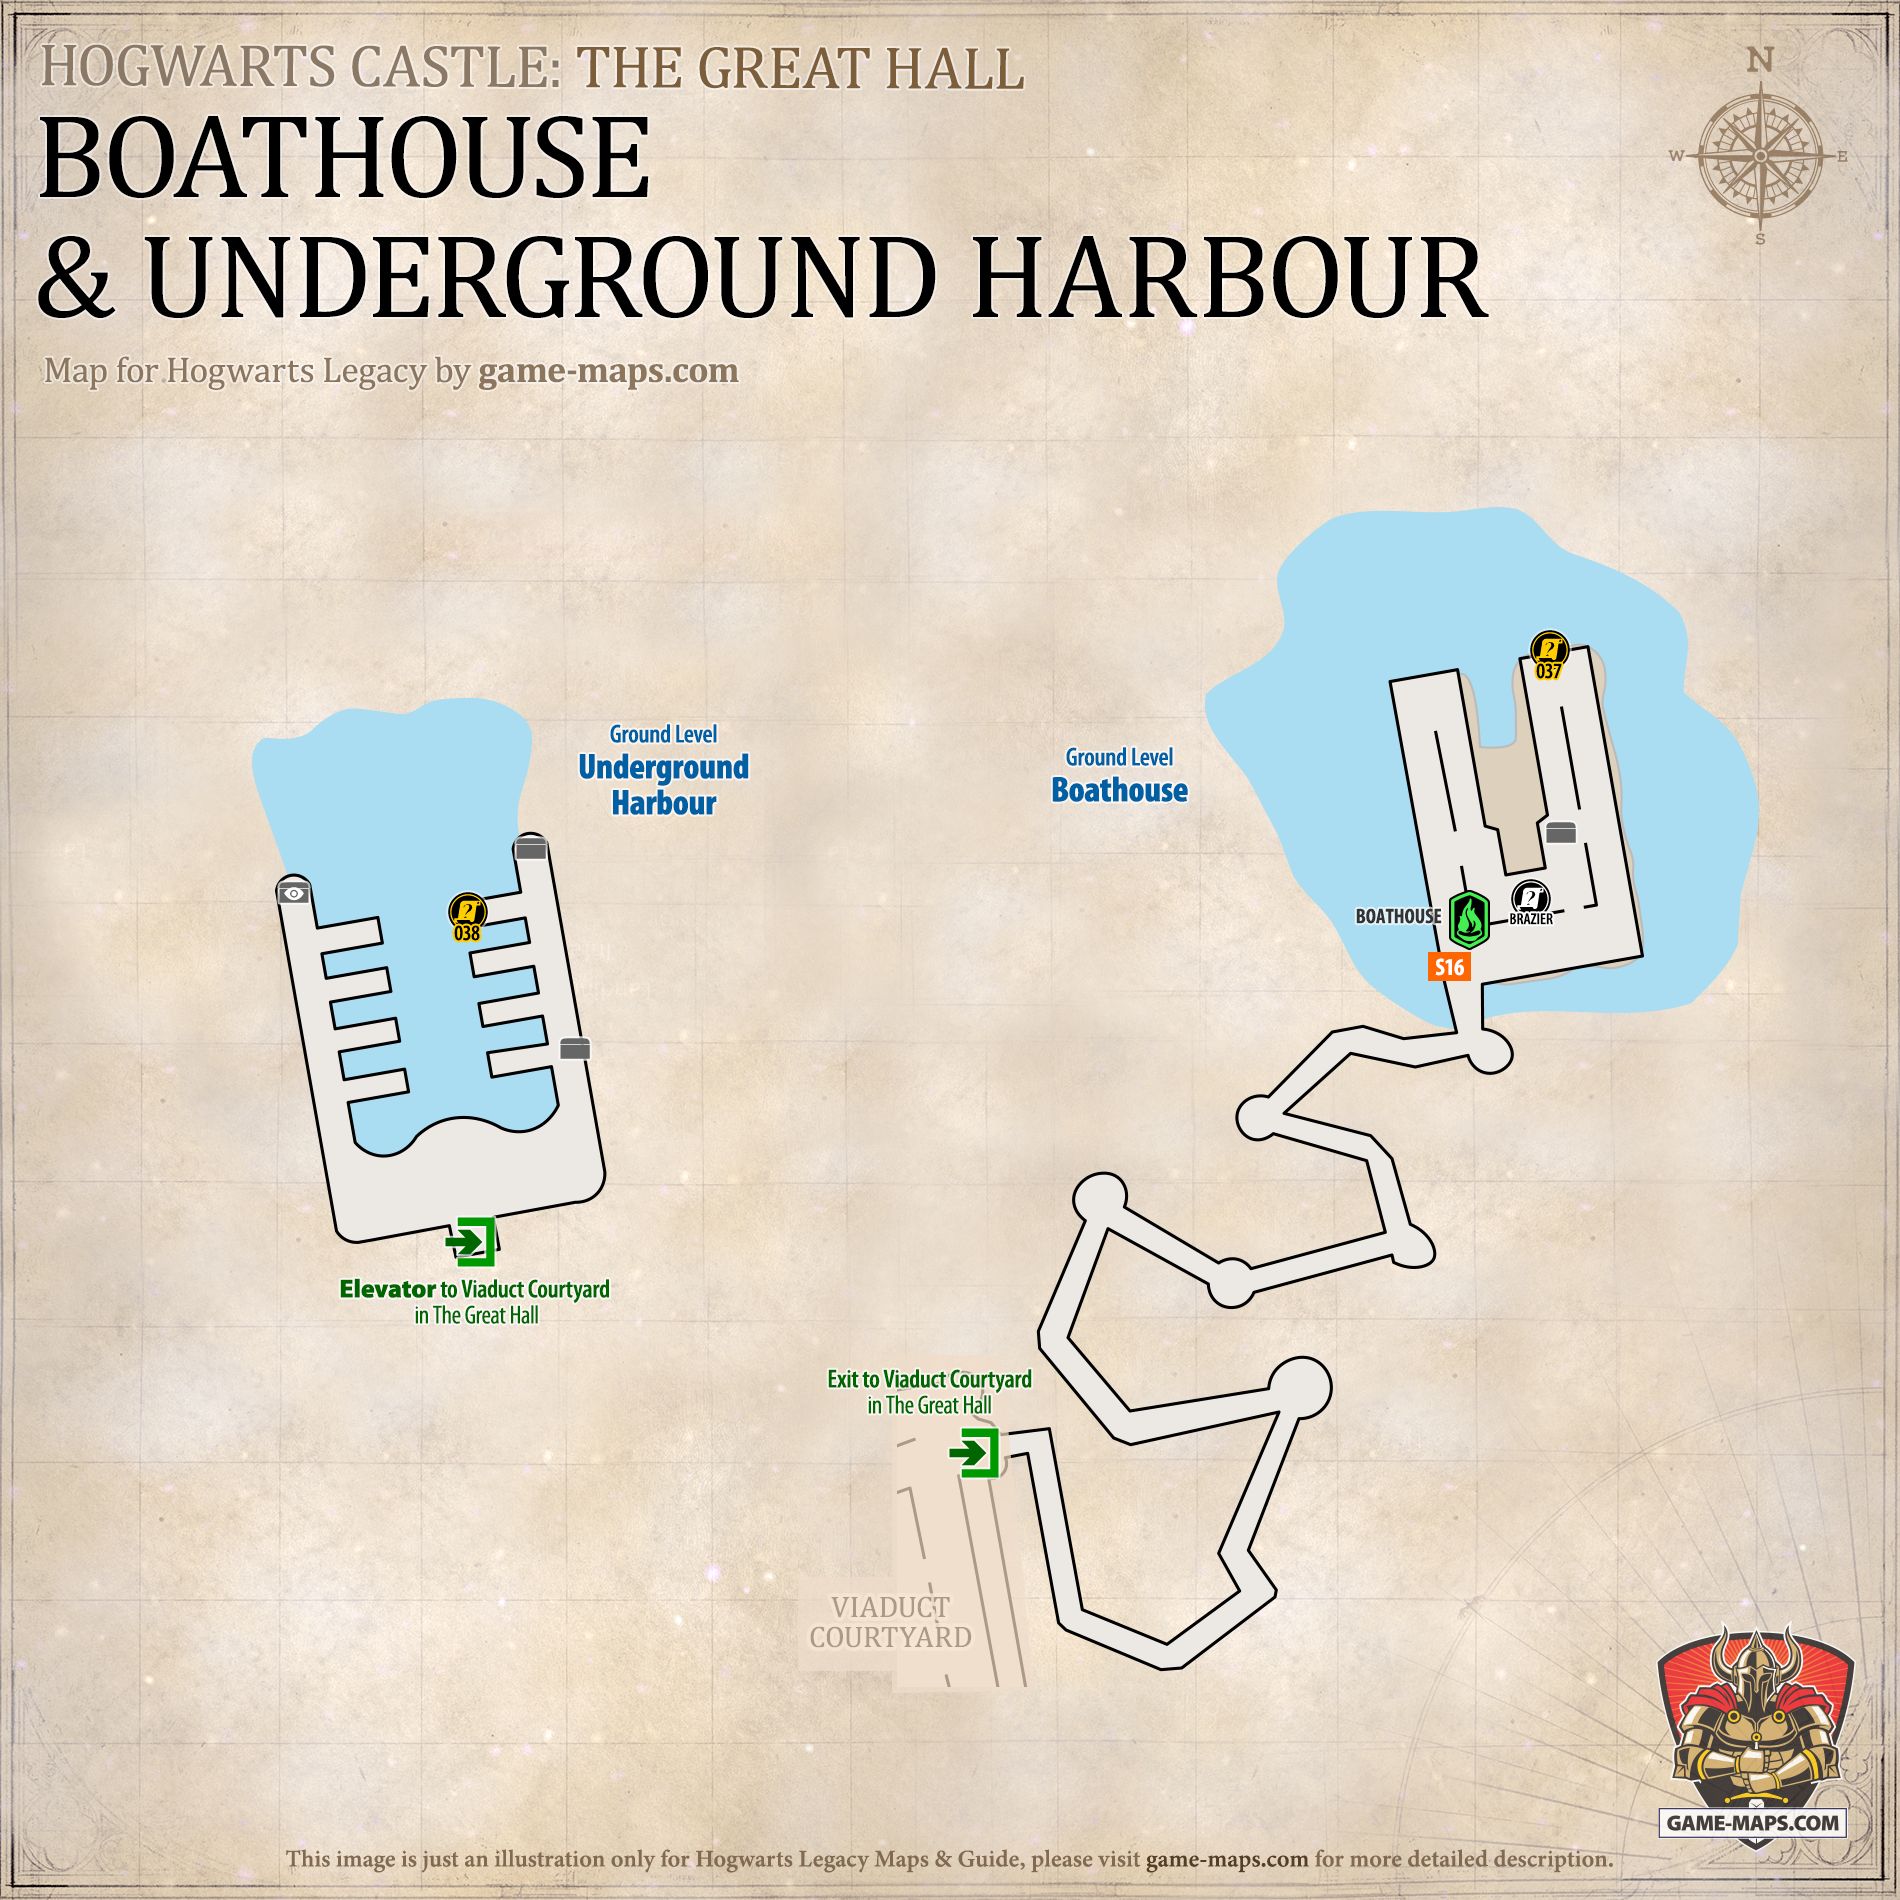 Boathouse & Underground Harbour Map for Hogwarts Legacy